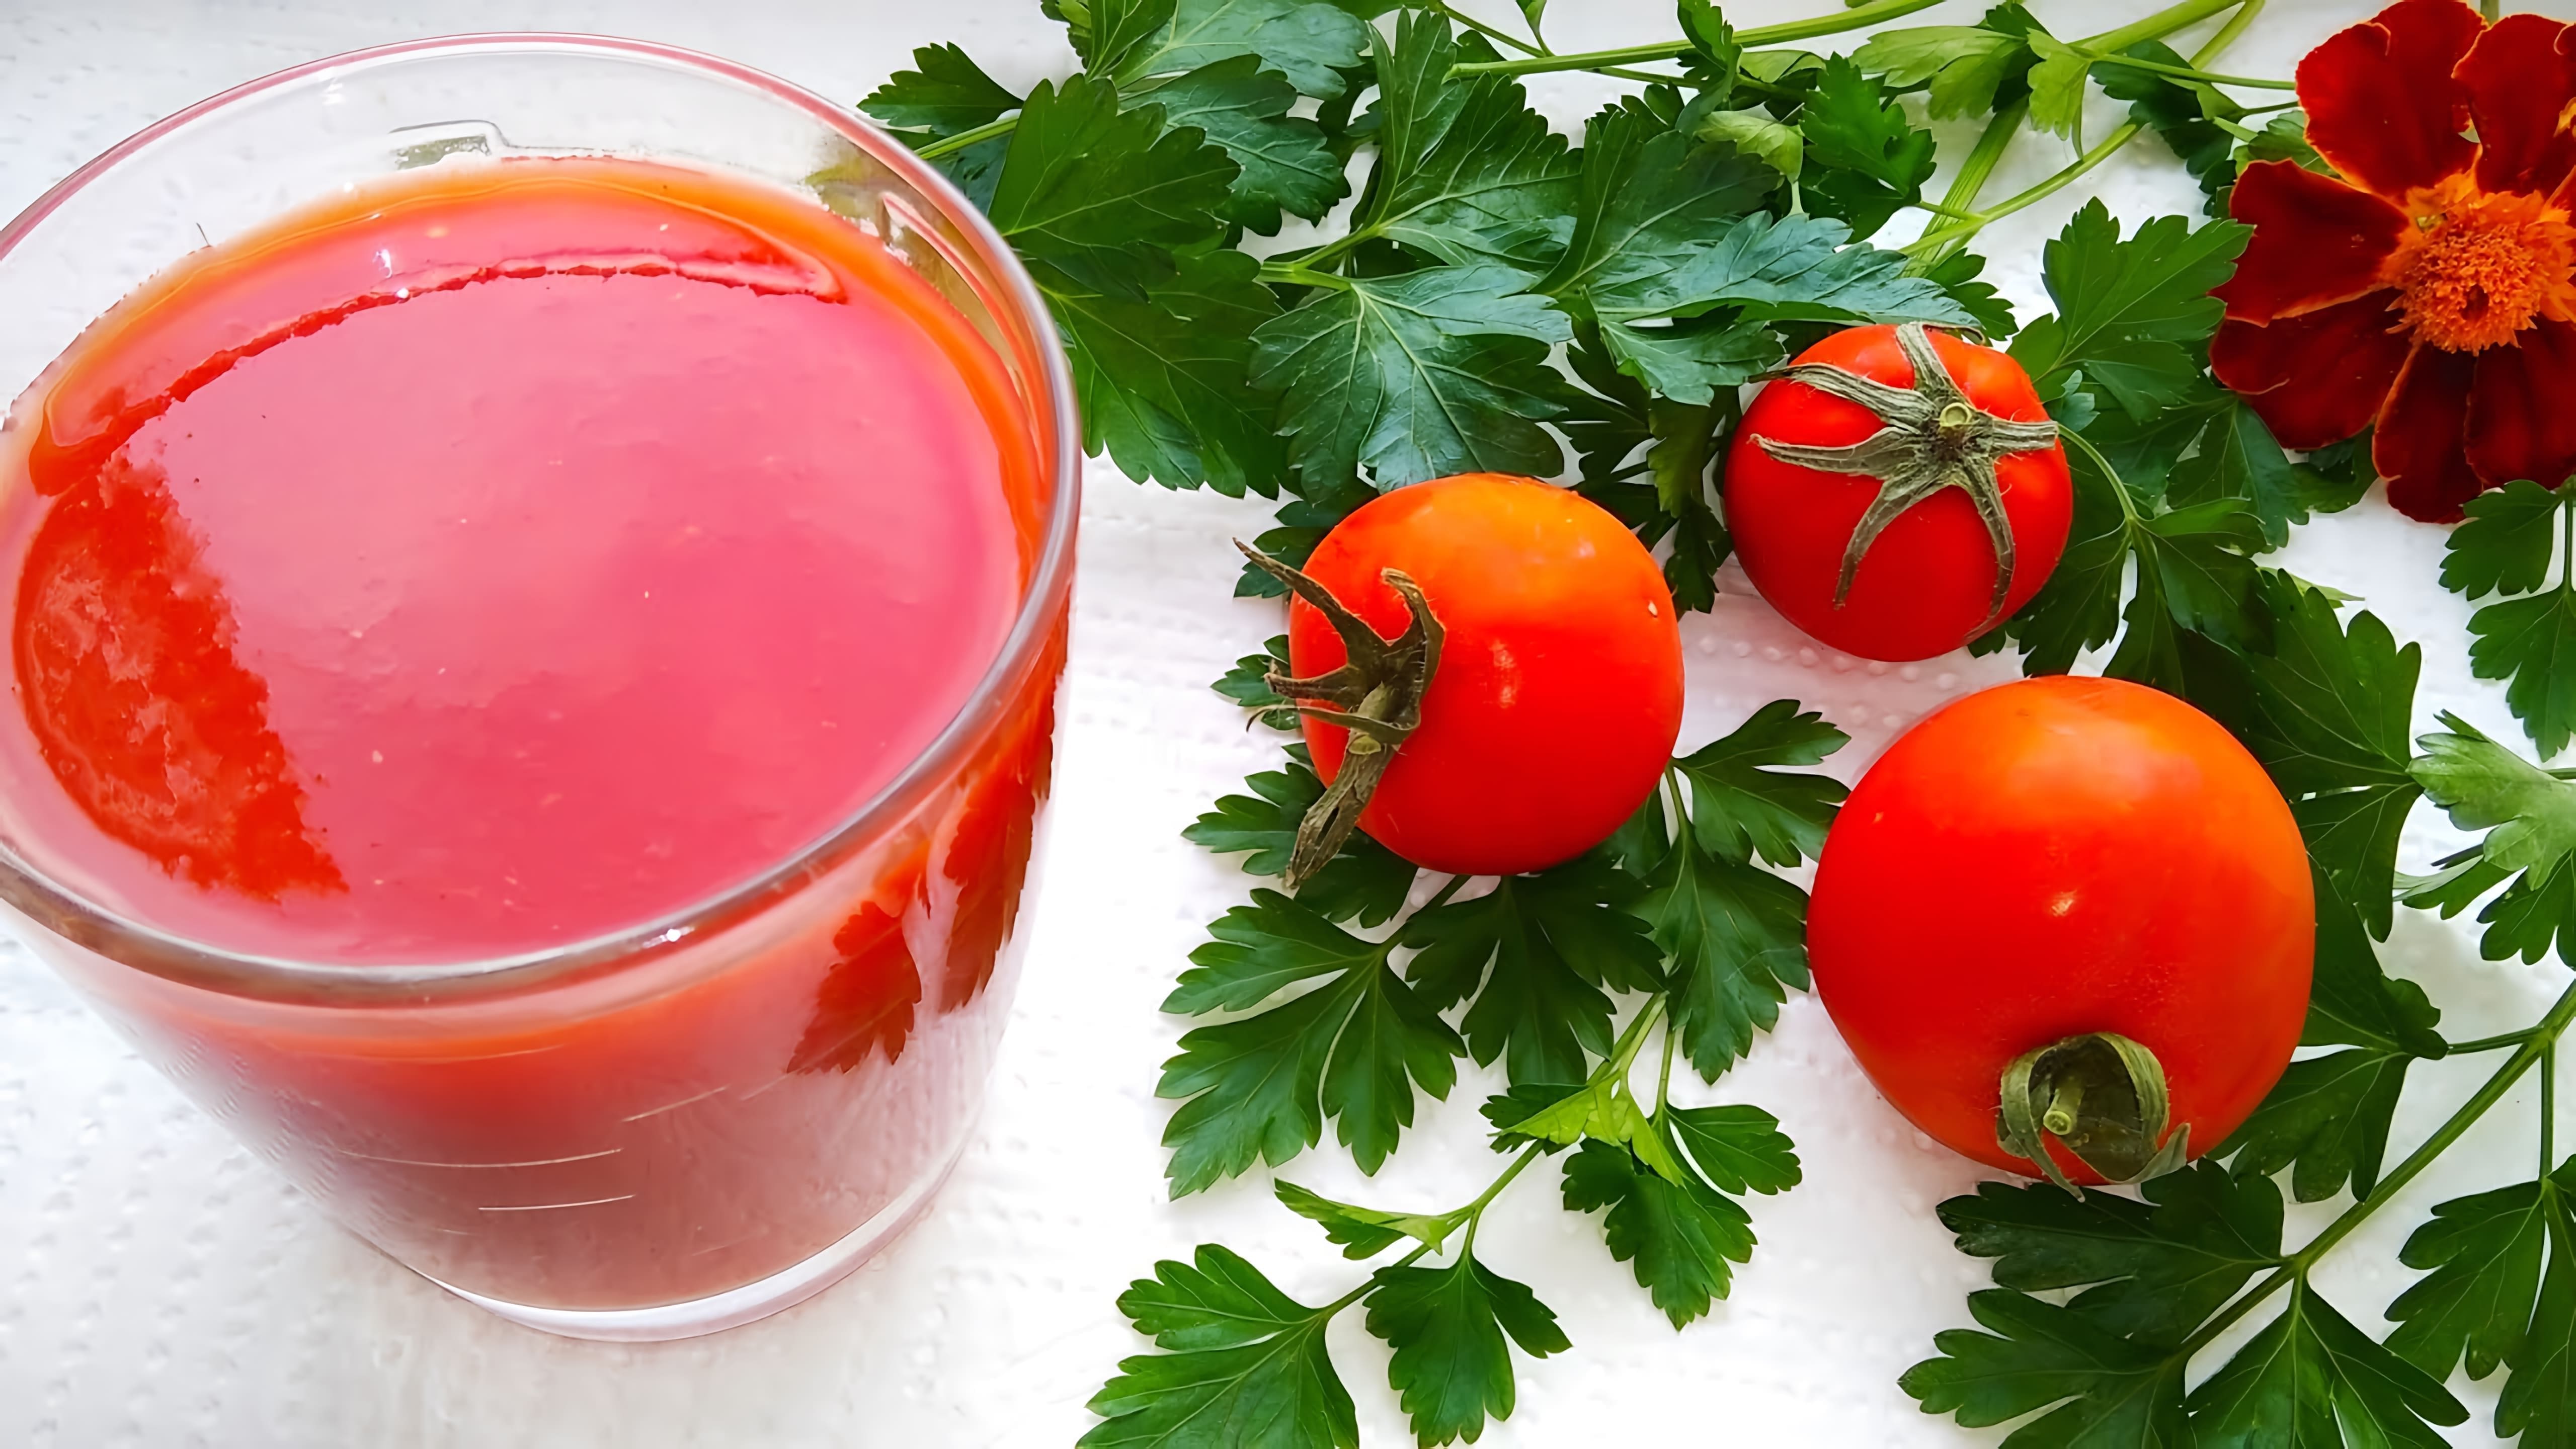 В этом видео демонстрируется простой и быстрый способ приготовления томатного сока на зиму без использования соковыжималки или мясорубки